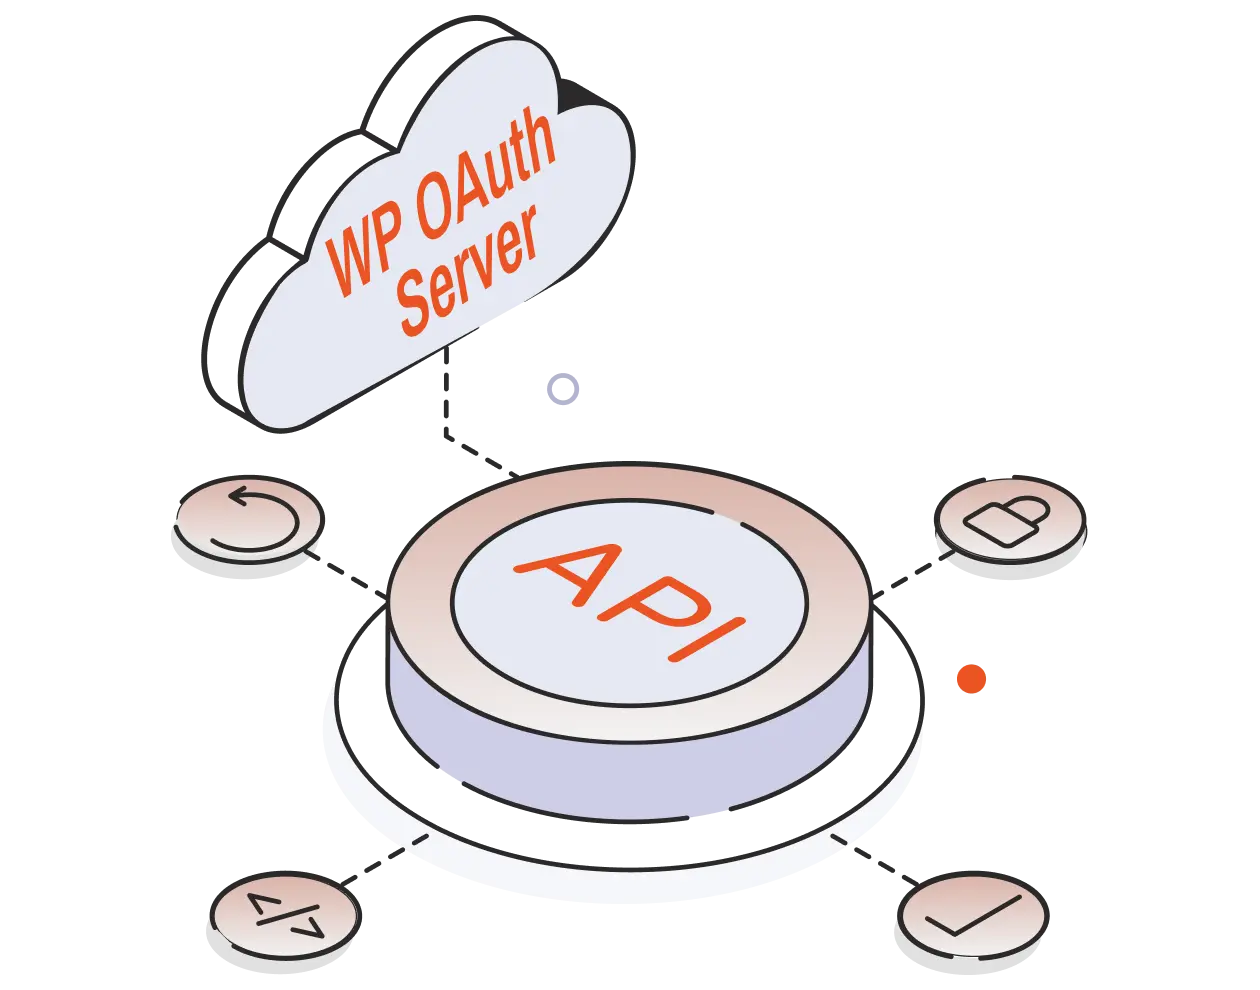 Integración de autenticación de API Rest - Servidor WP OAuth